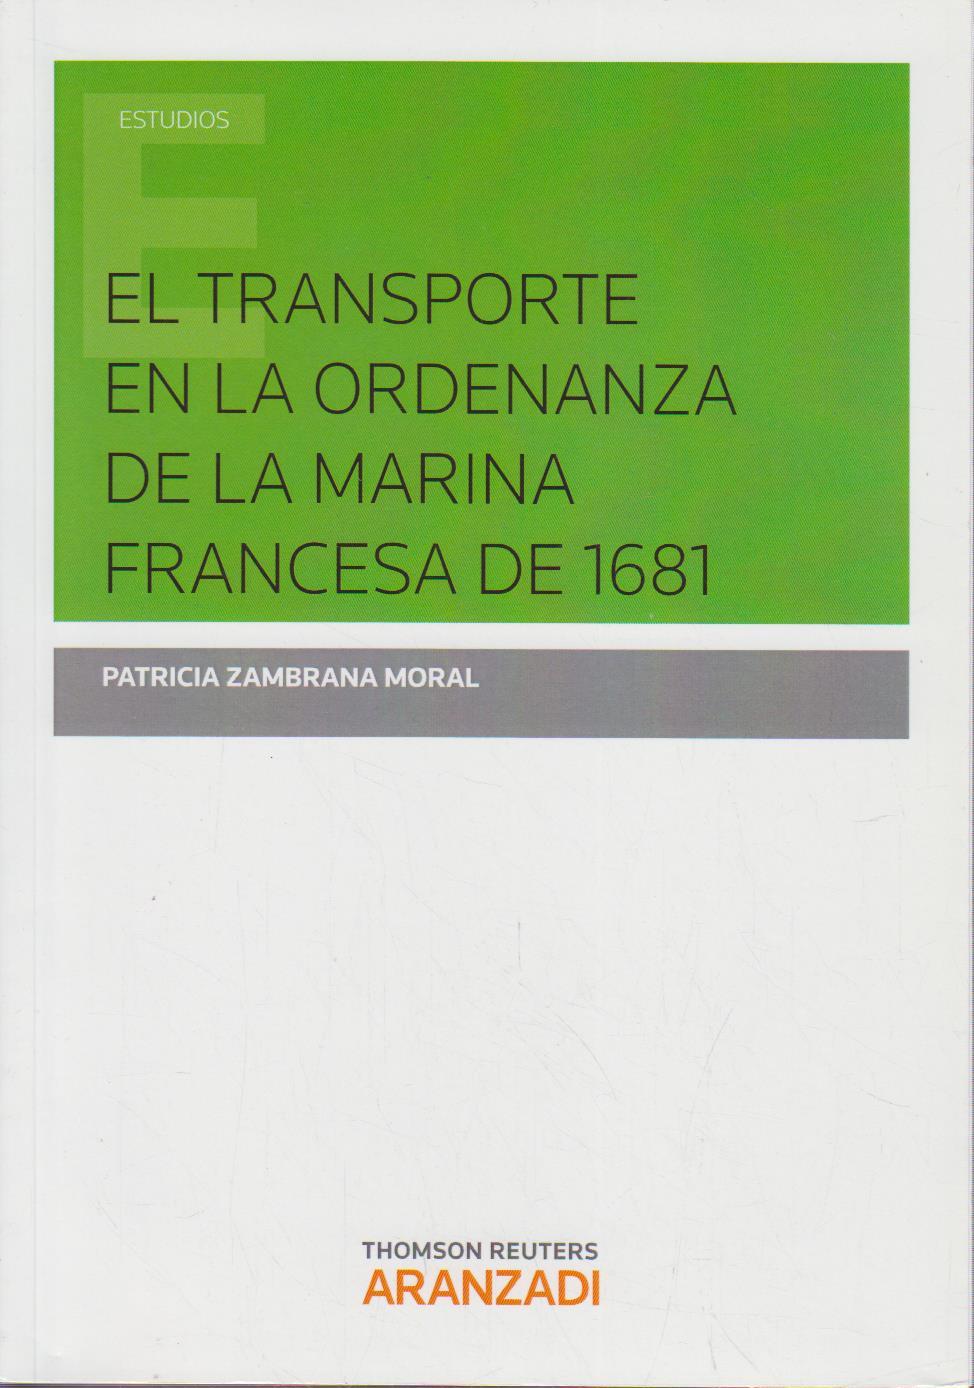 El transporte en la ordenanza marina francesa de 1681 (Monografía)  1 - Zambrana Moral, Patricia